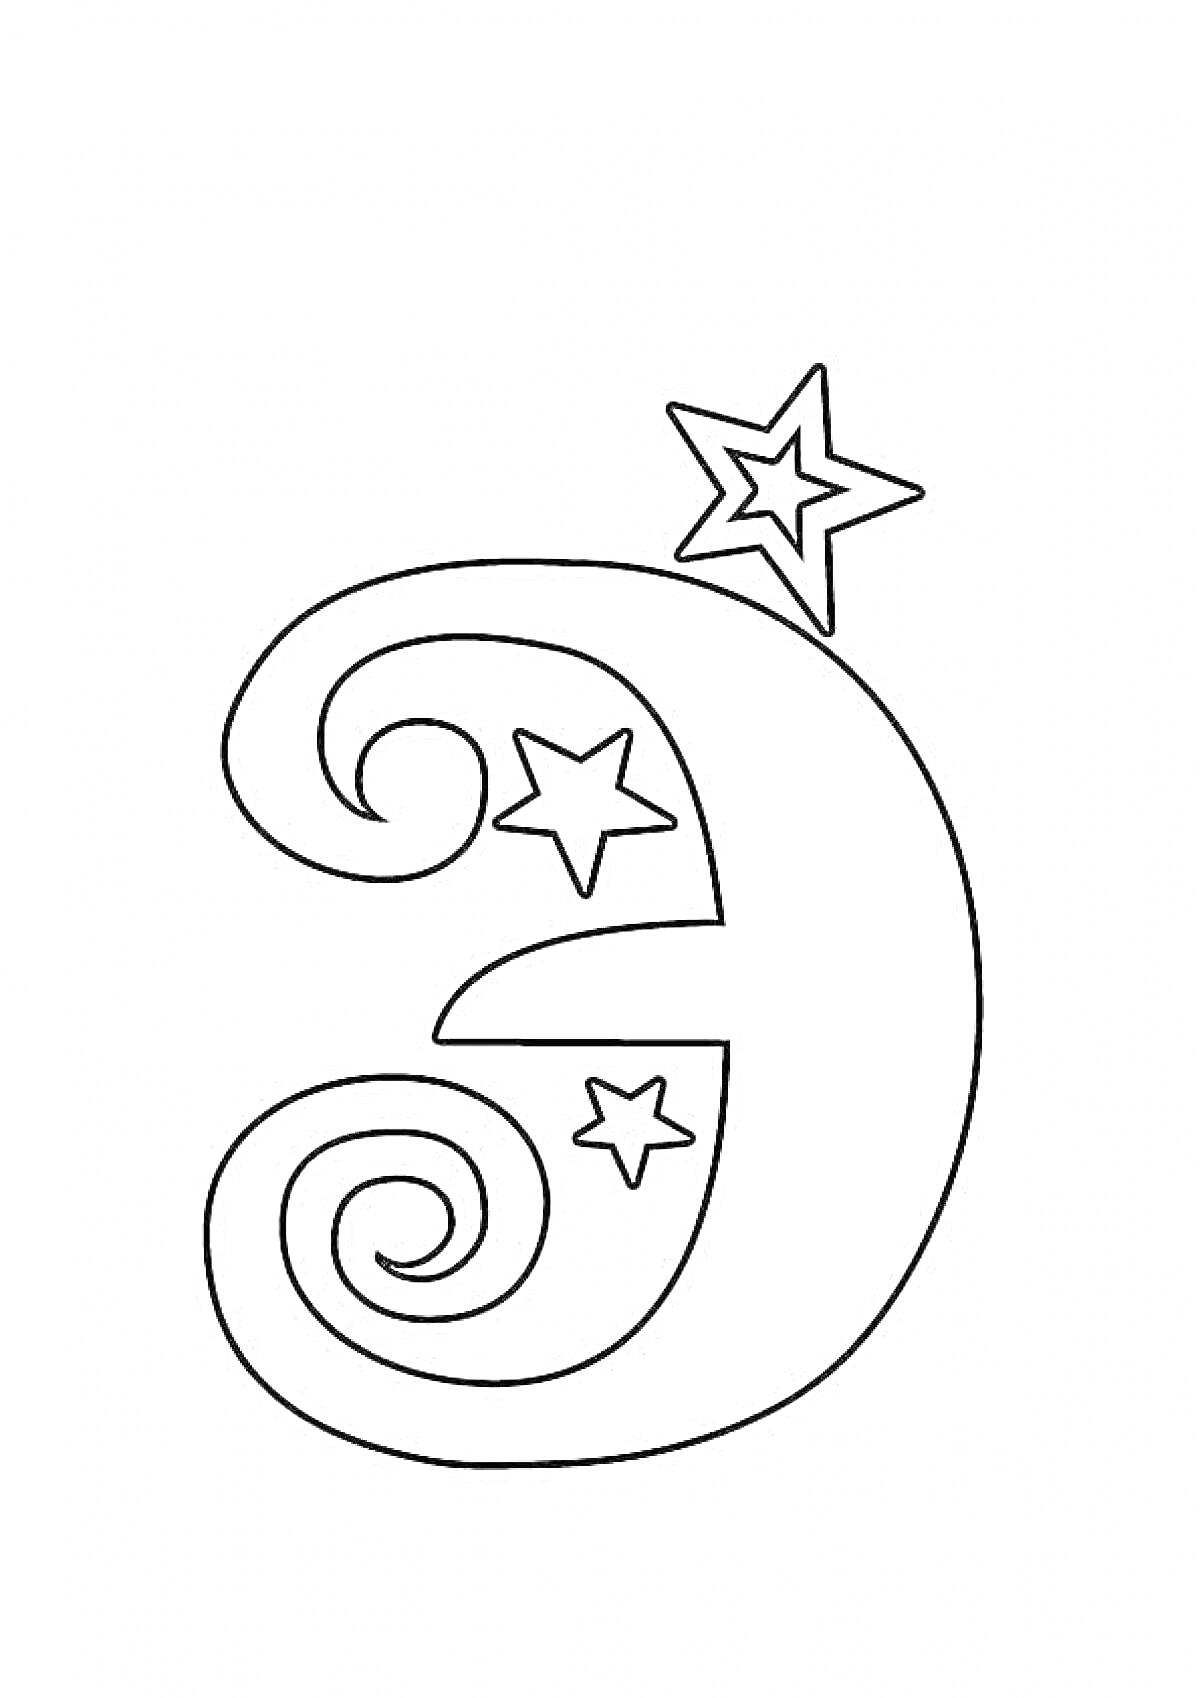 Раскраска Буква Э с тремя звездами